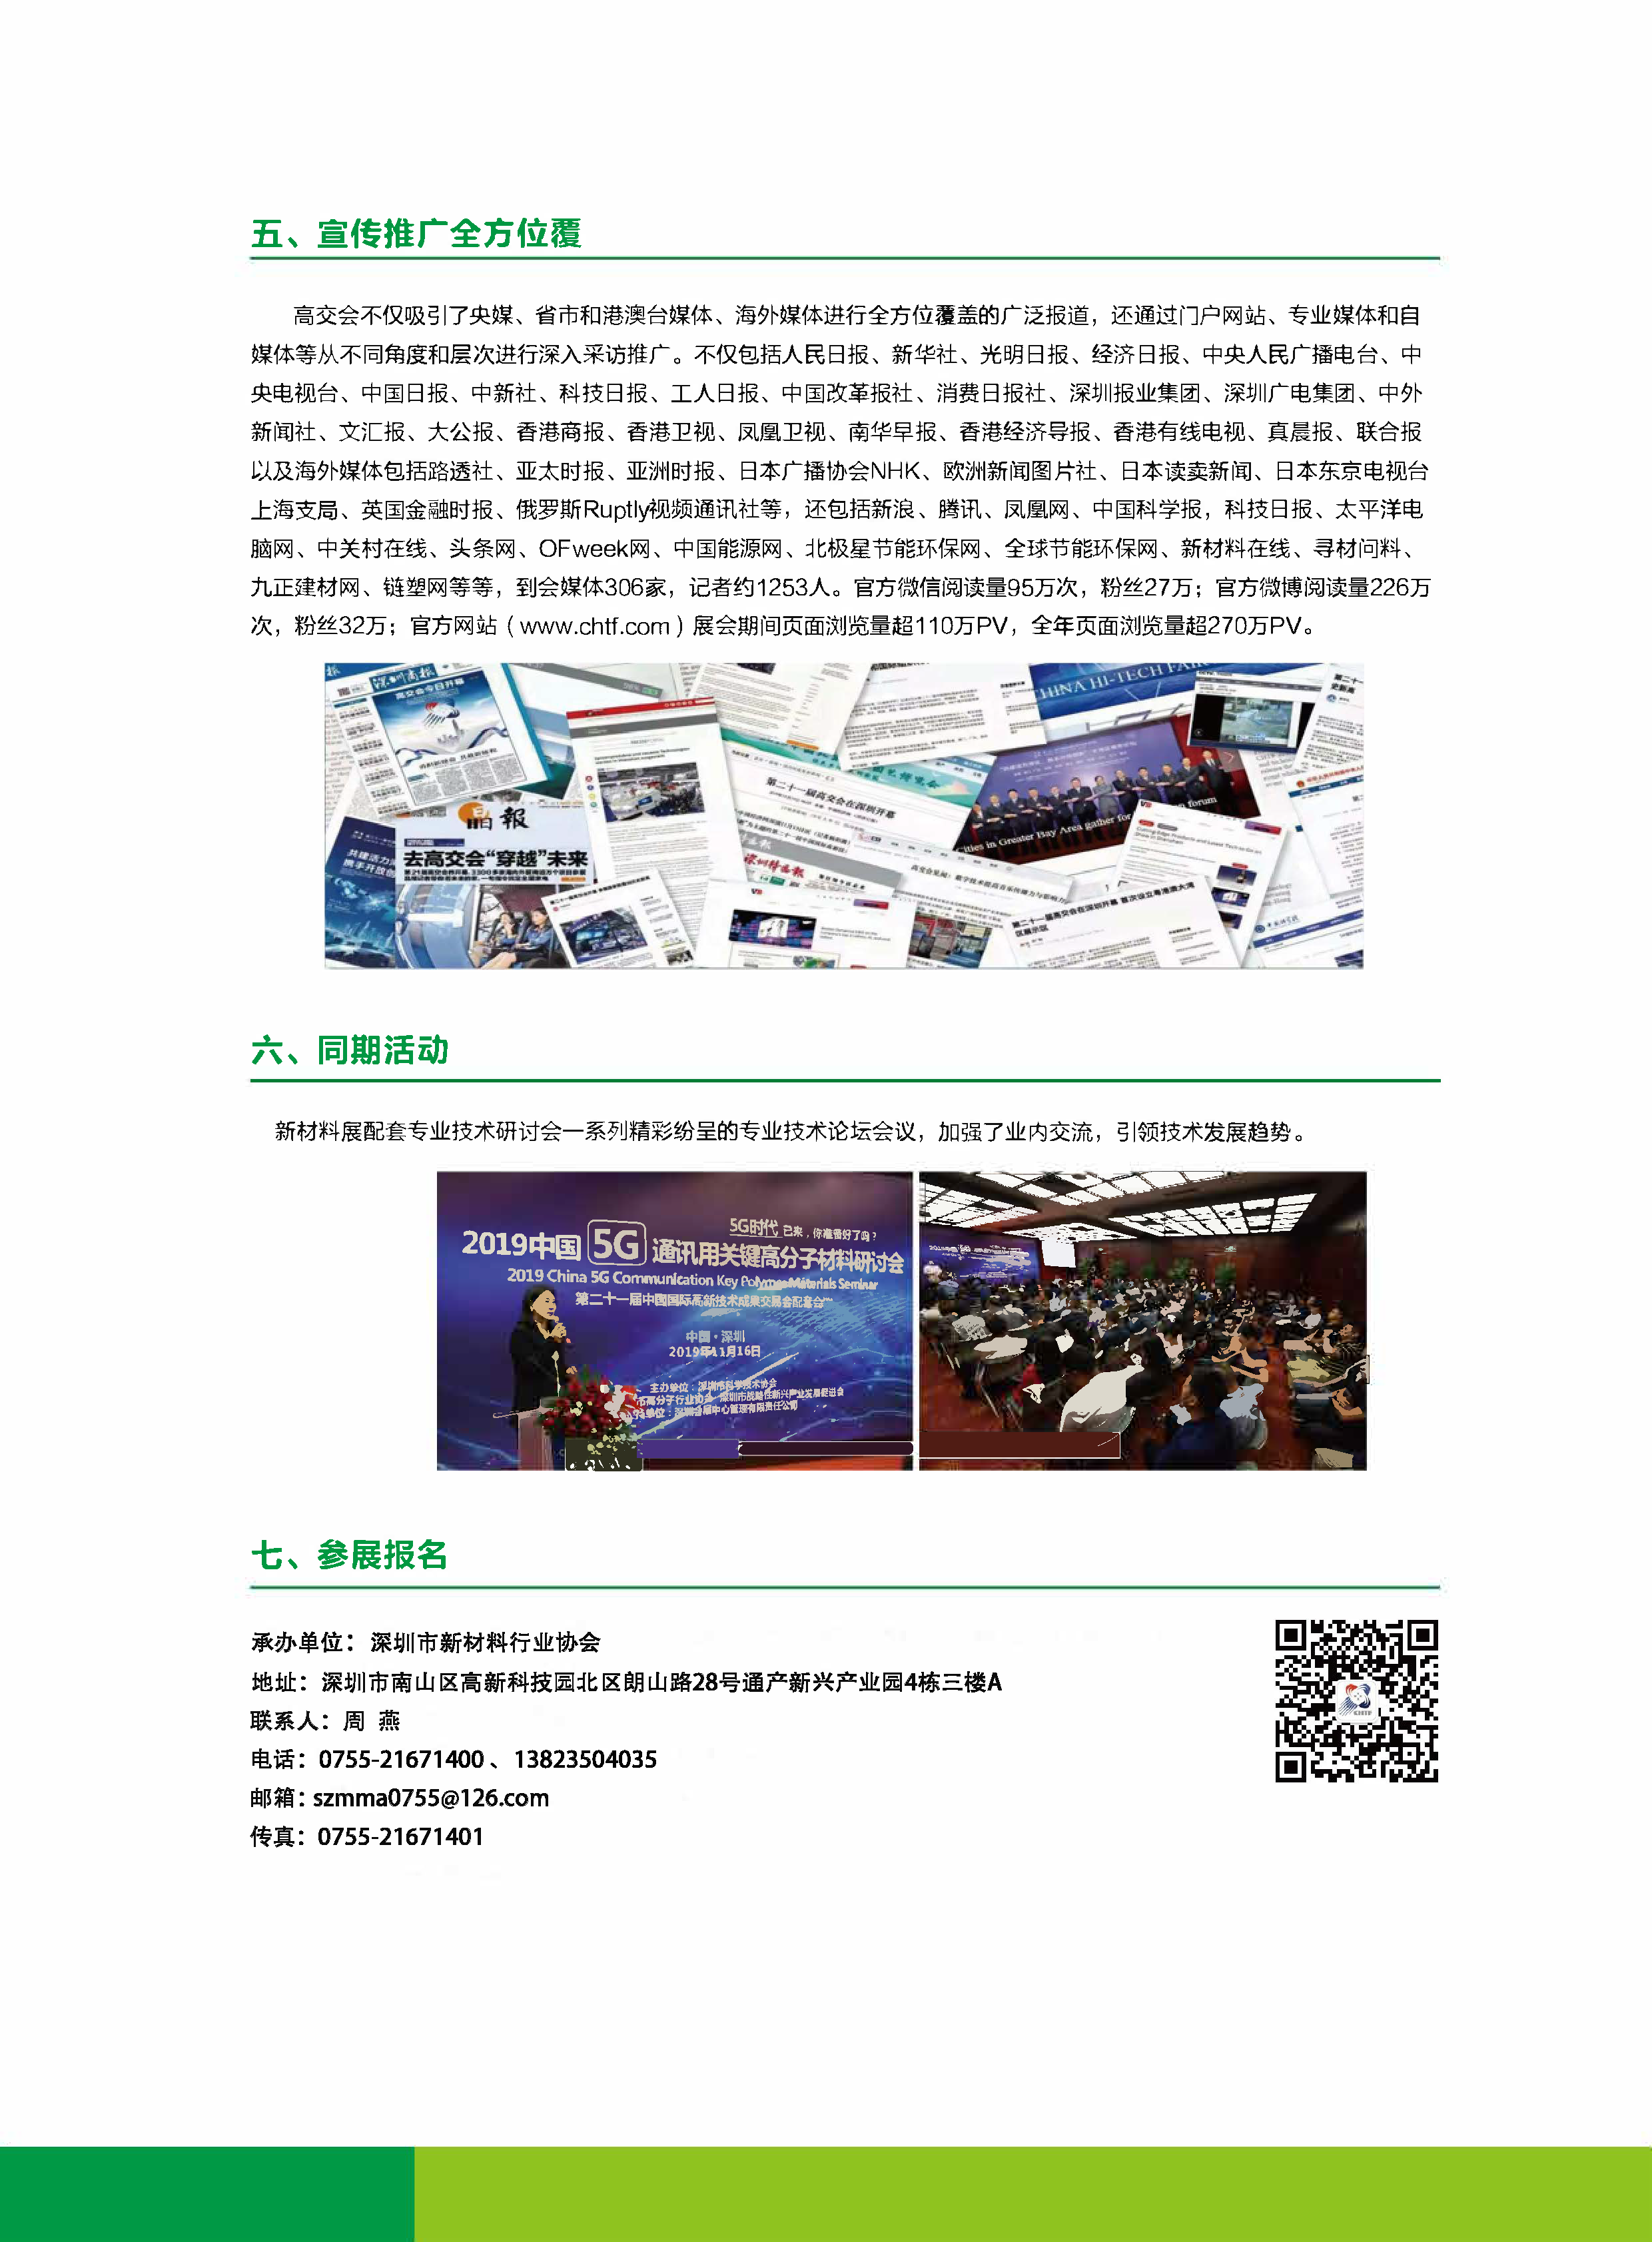 20200522-第22届高交会新材料展电子版_页面_4.png